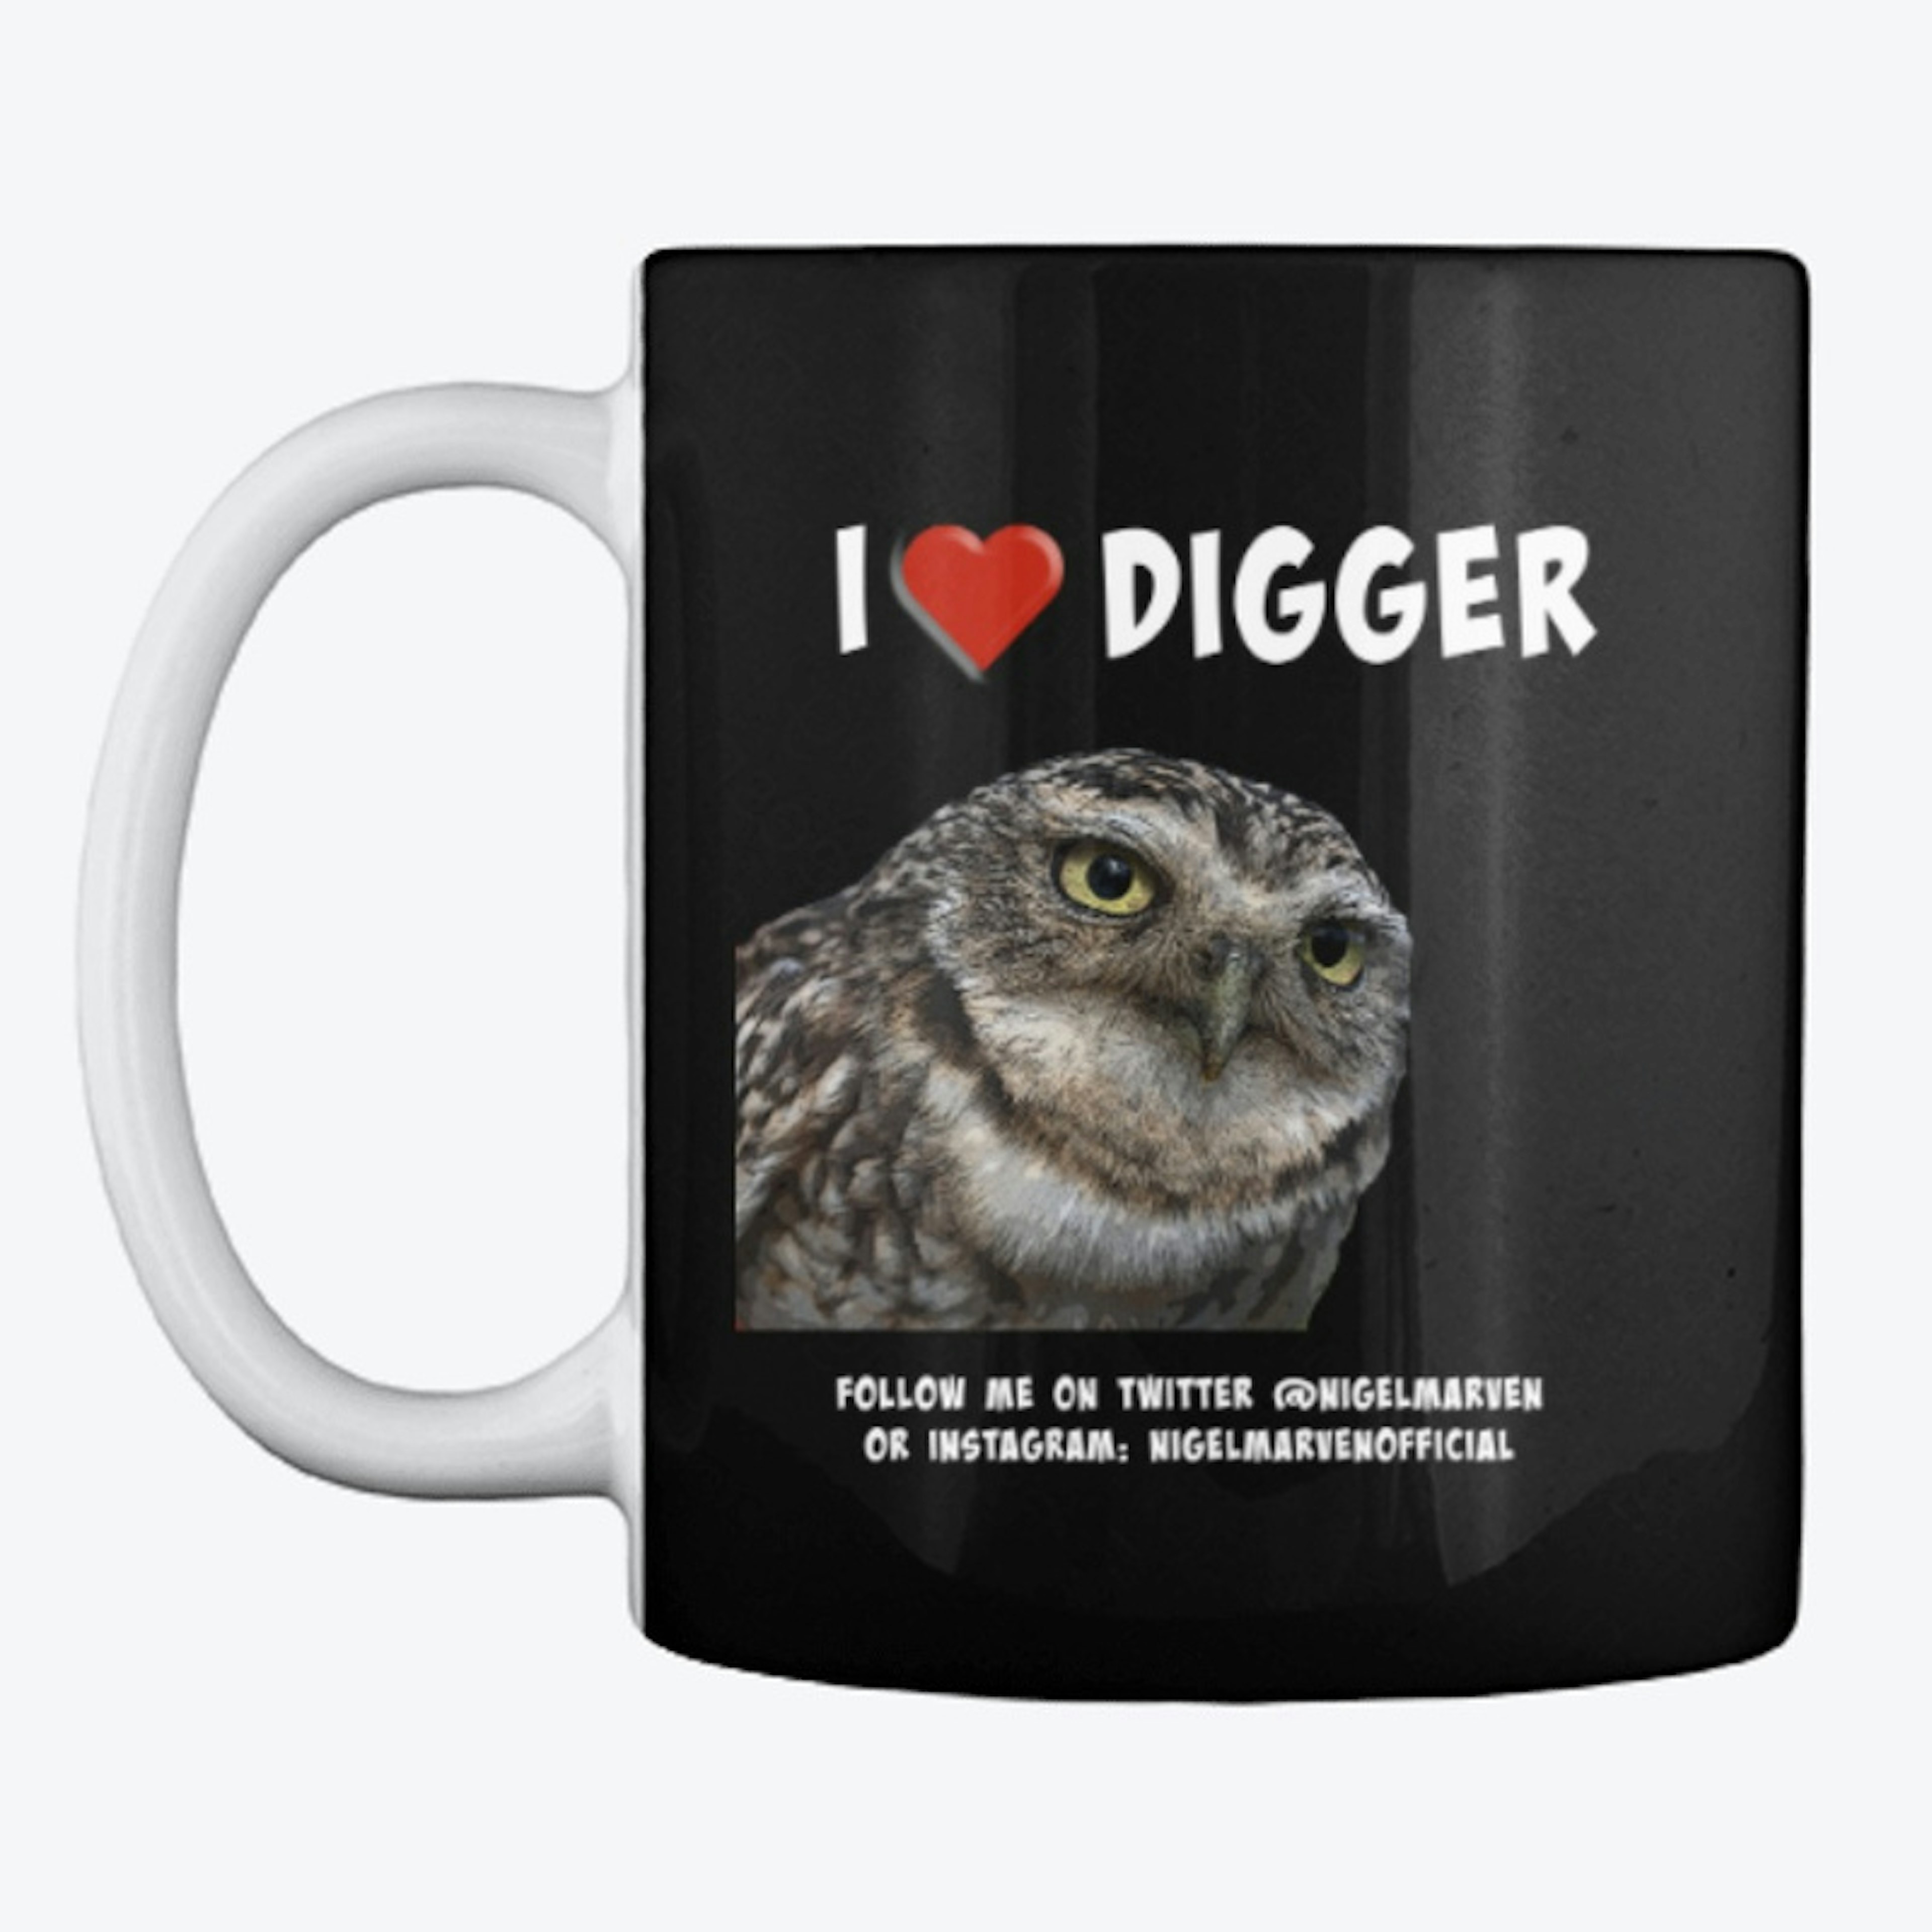 I Love Digger!